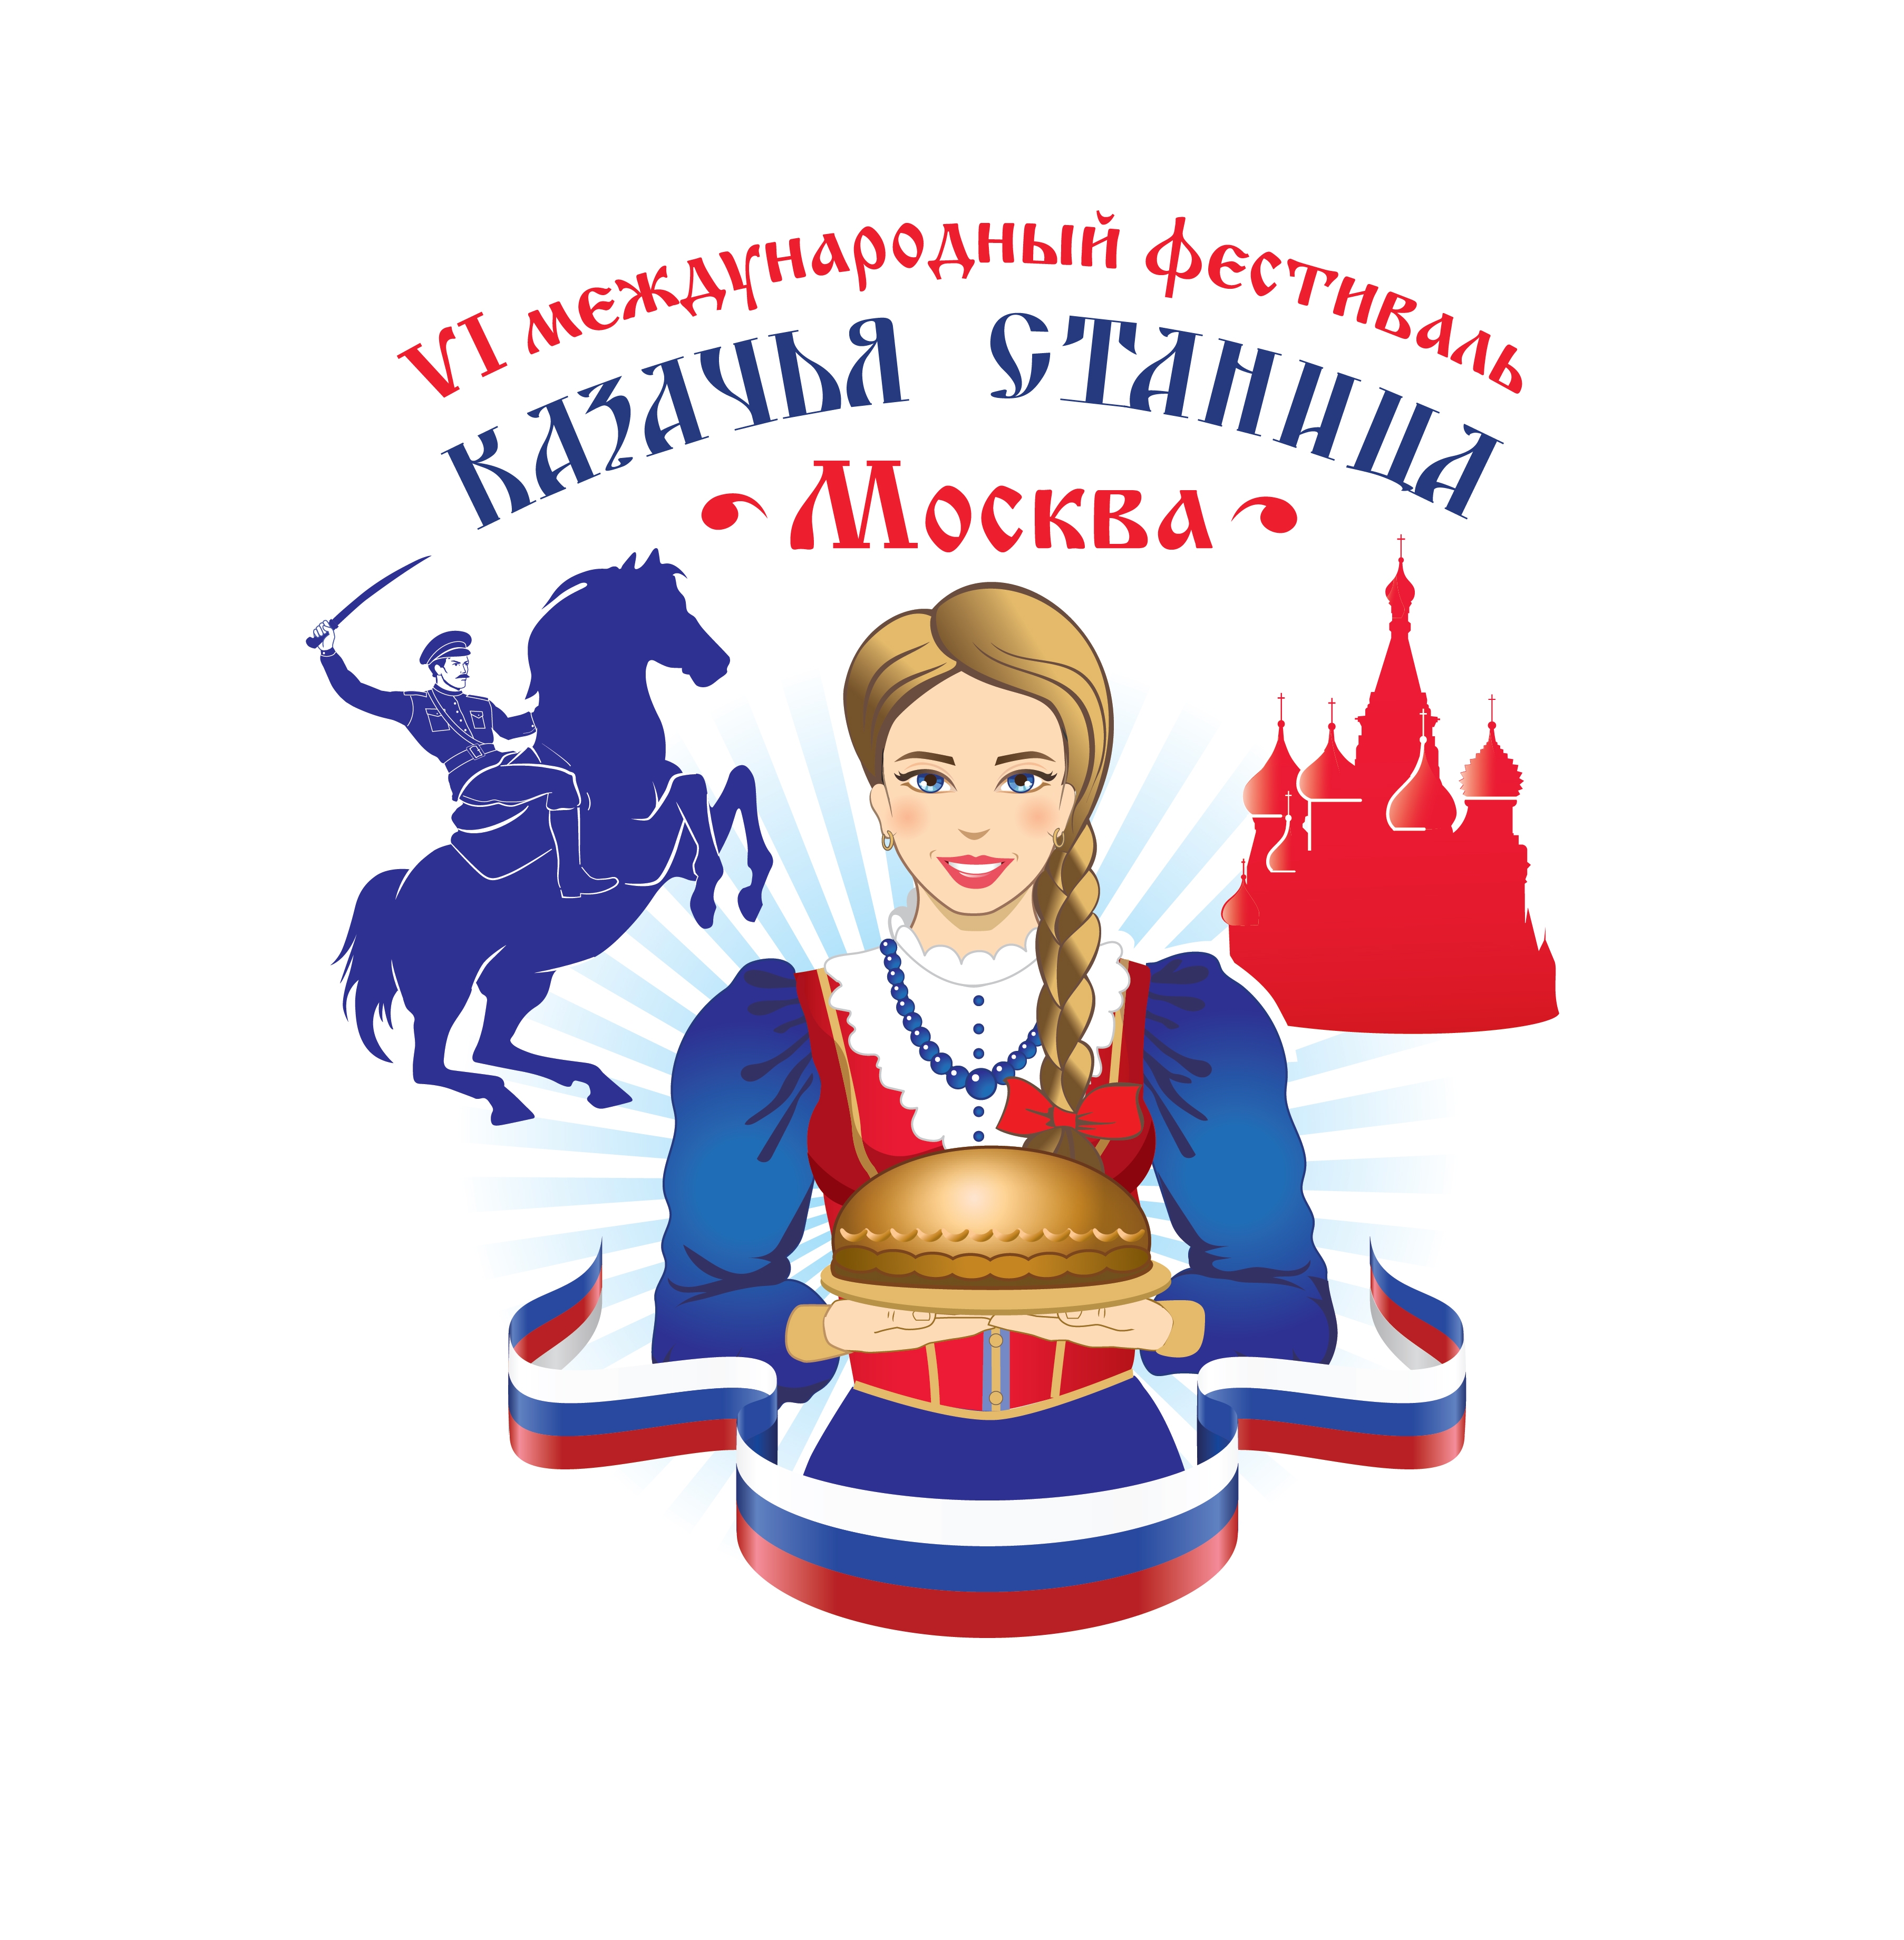 Казачья станица логотип